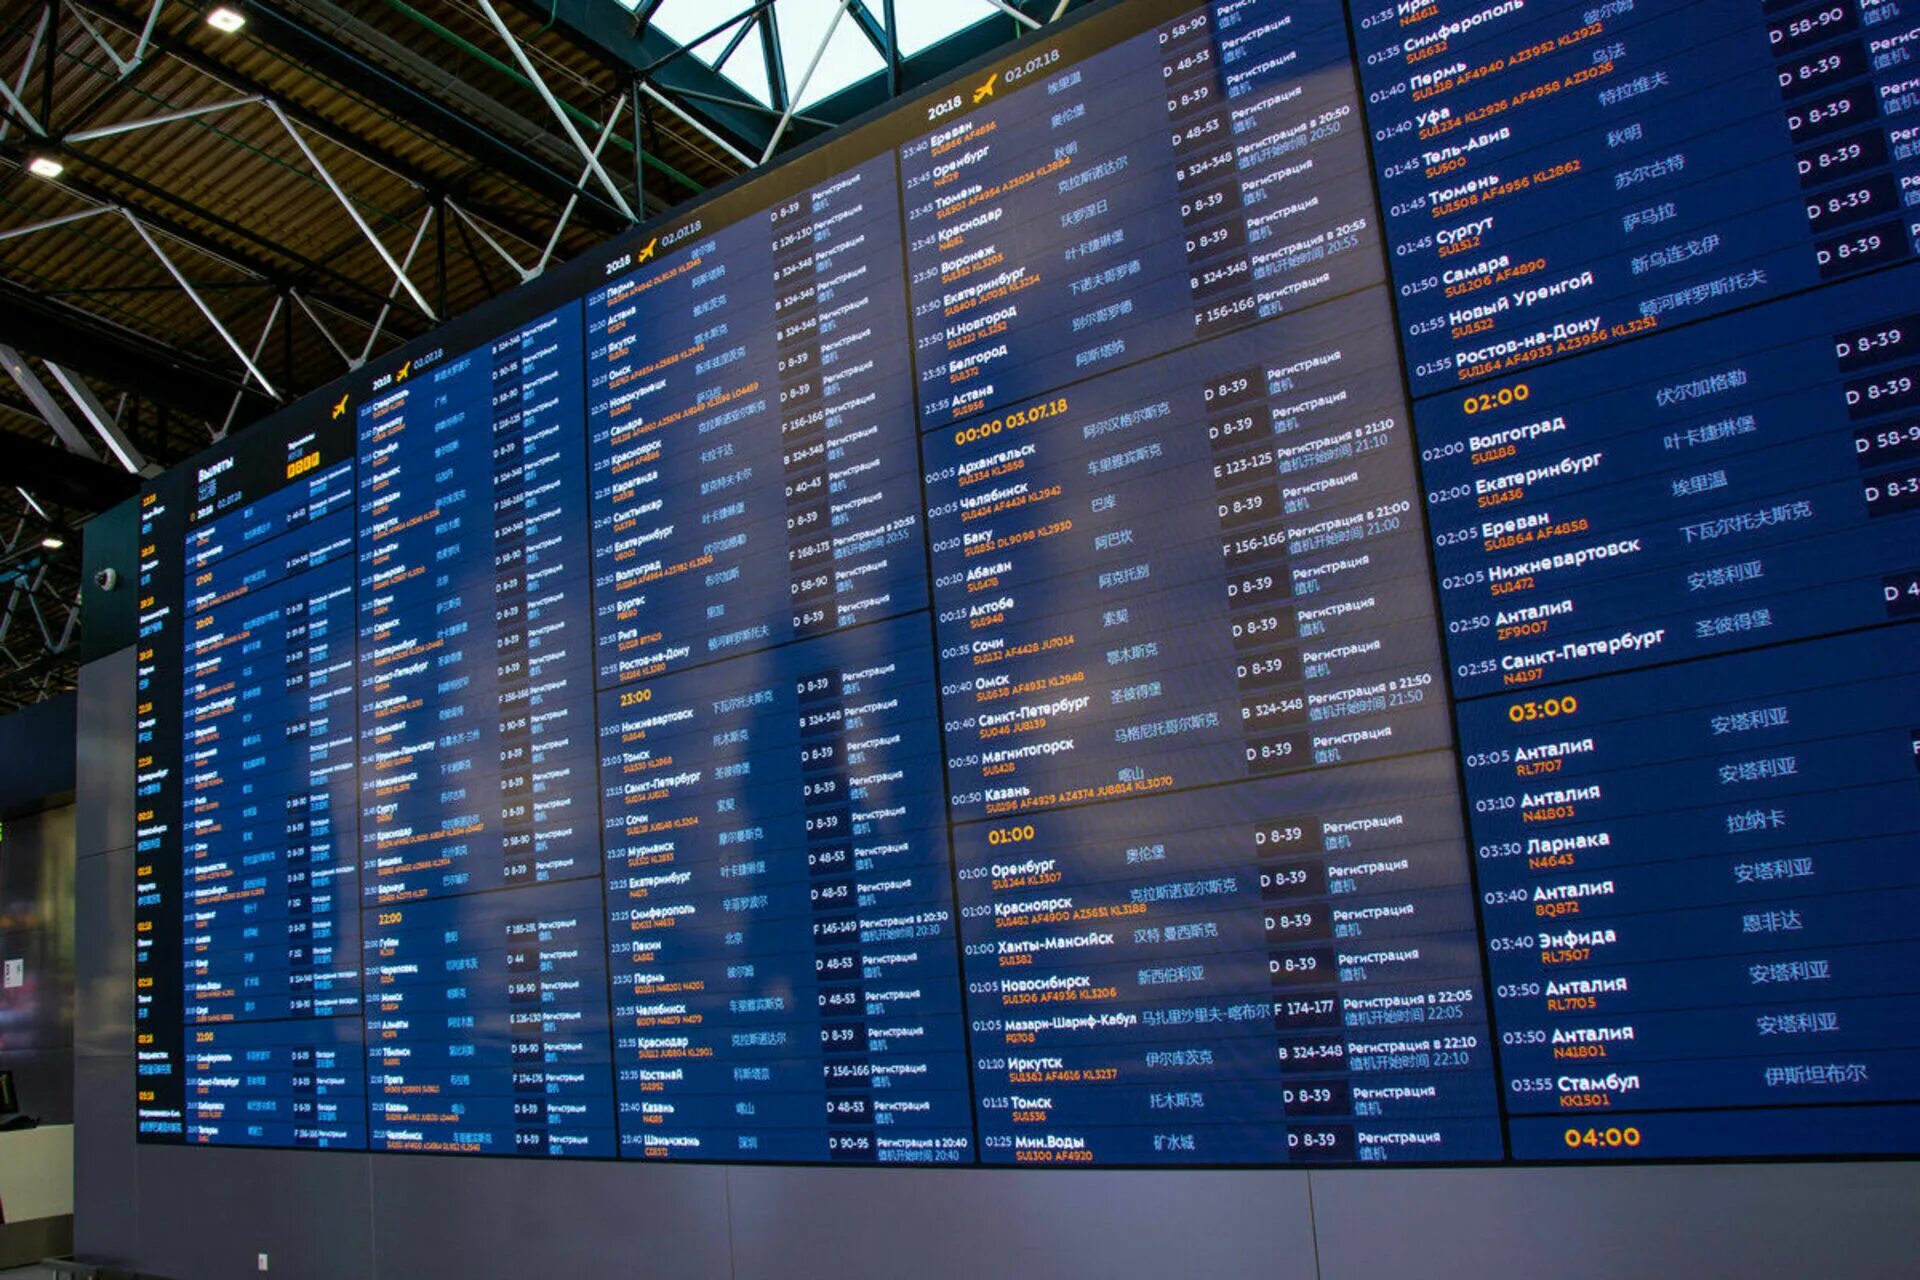 Аэропорт Шереметьево табло. Информационное табло в аэропорту Шереметьево. Табло аэропорта Шереметьево в 2018 году. Аэропорт Шереметьево внутренние рейсы терминал в вылет.